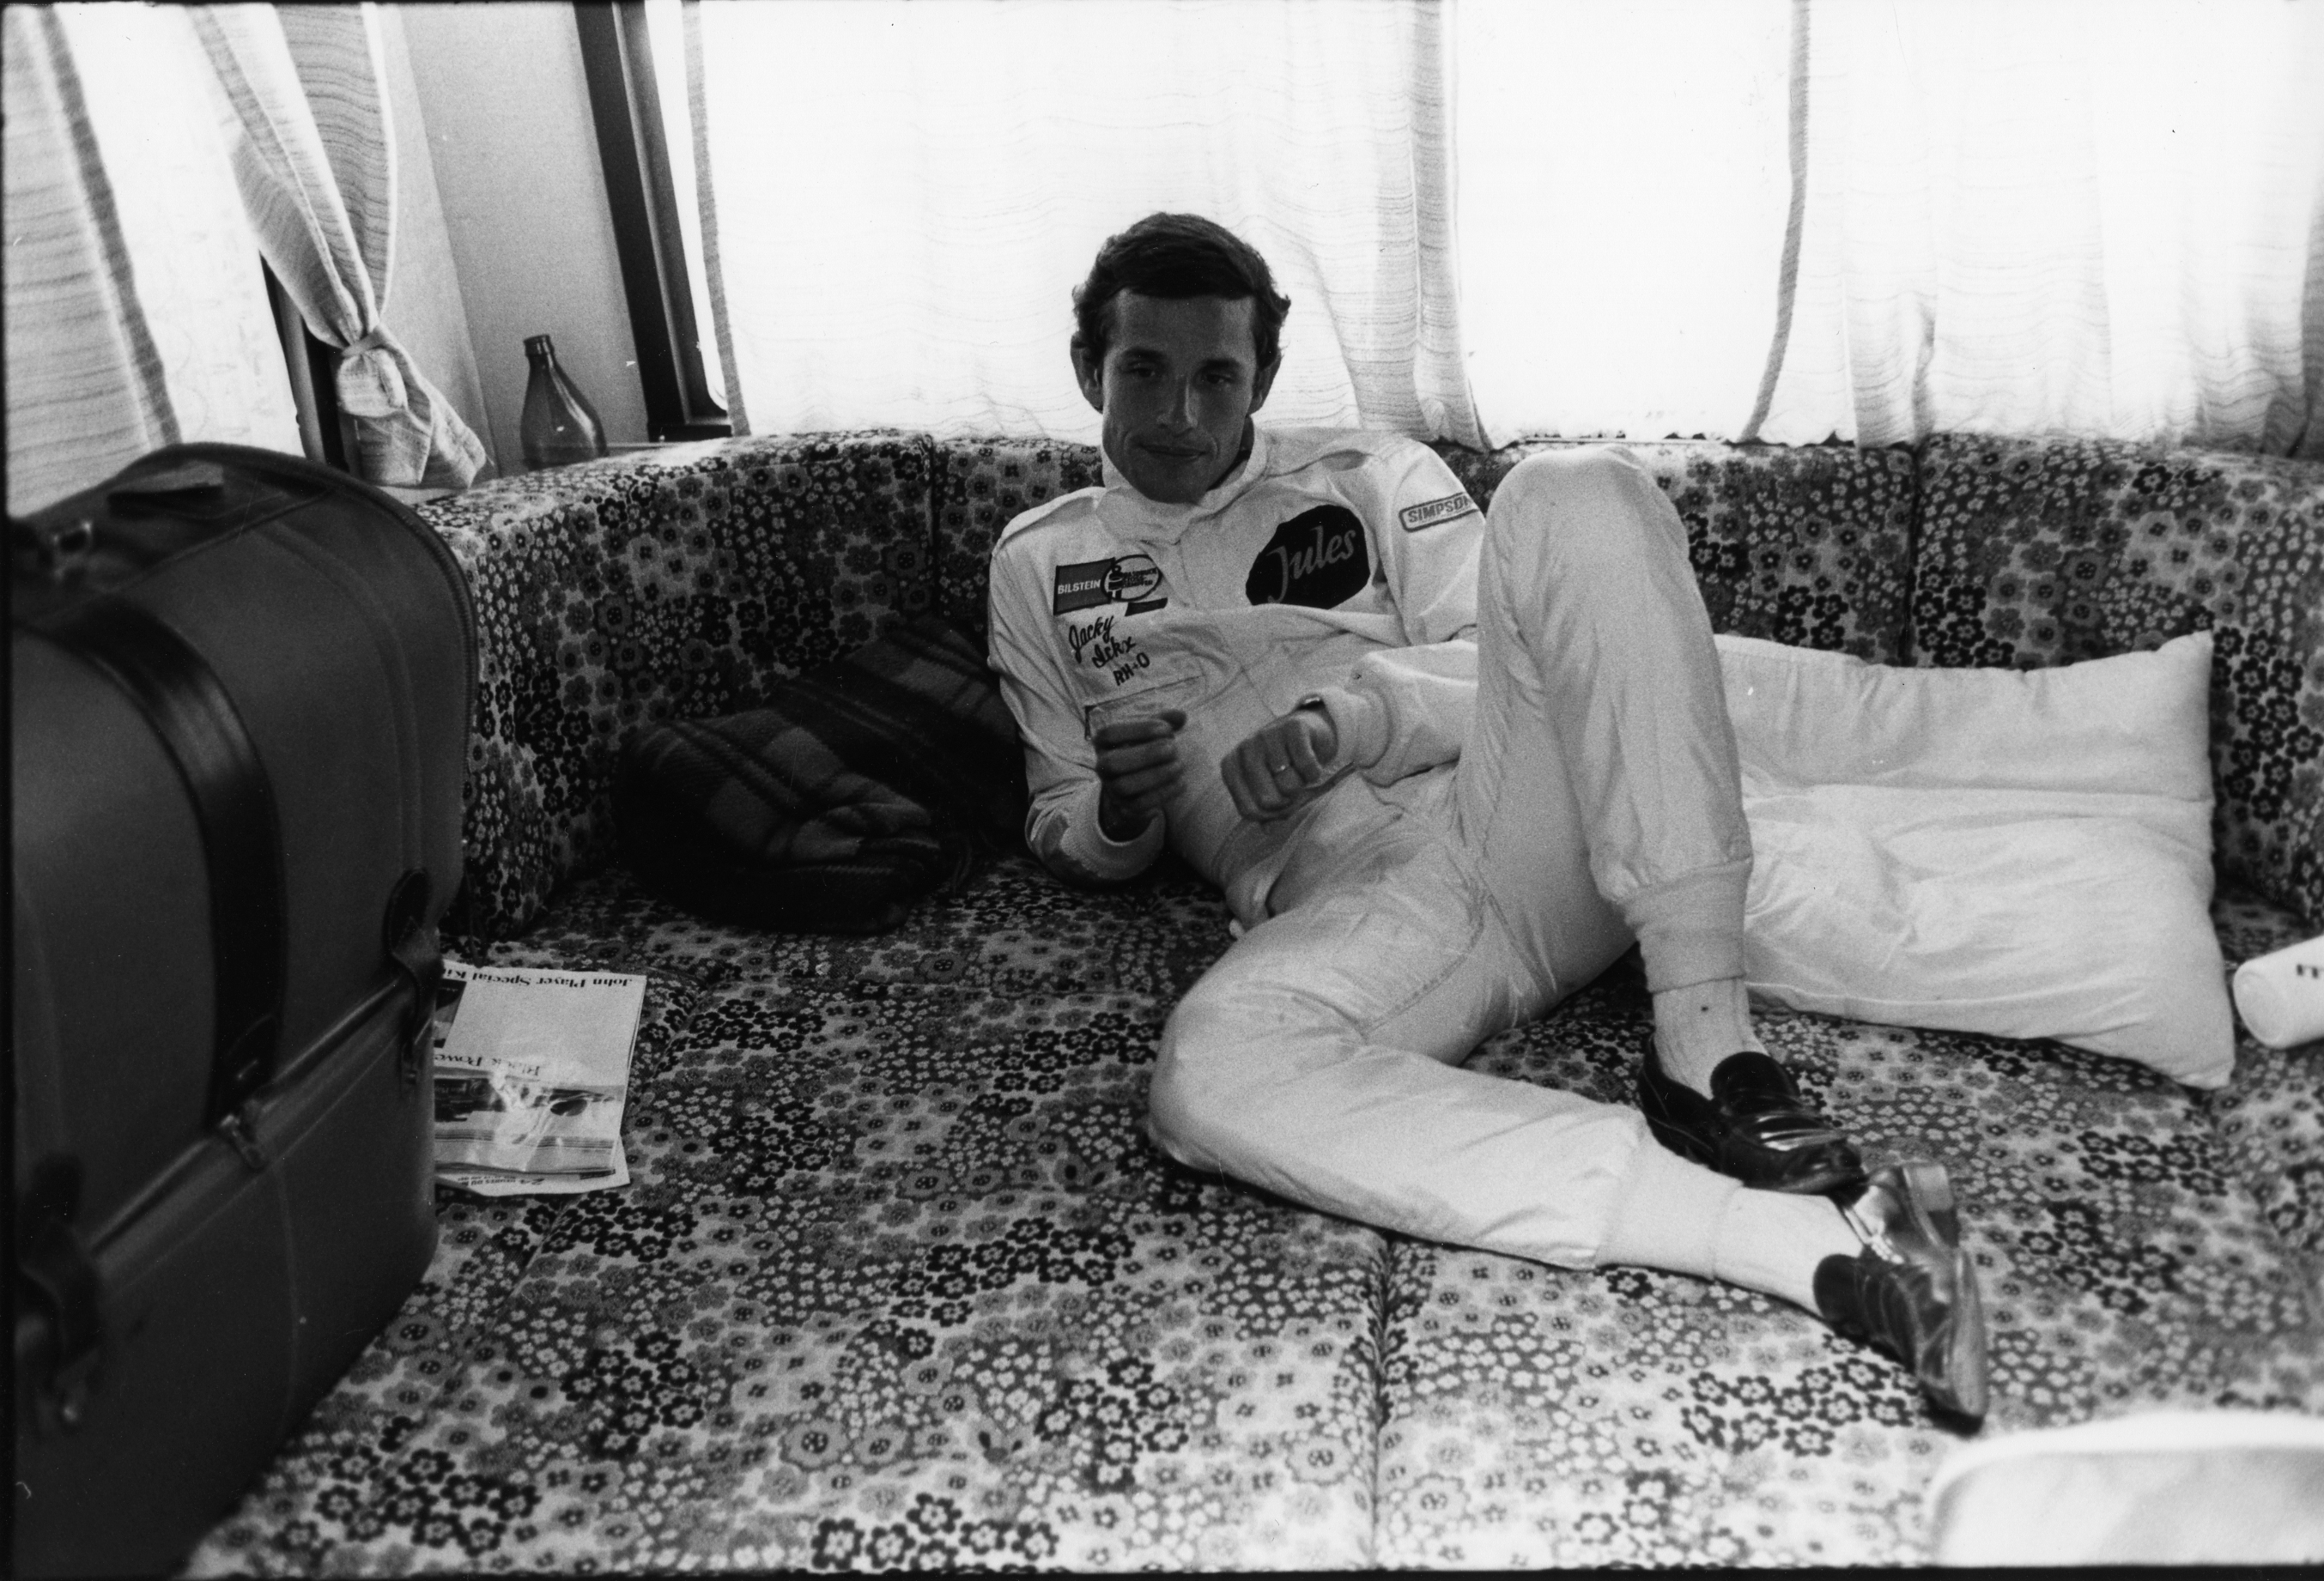 Jacky Ickx faisait partie de ces as. "M. Le Mans", avant Tom Kristensen, a réalisé cinq fois la pole position au Mans (1975, 1978, 1981, 1982 et 1983). Le tout pour six victoires. Un palmarès unique.